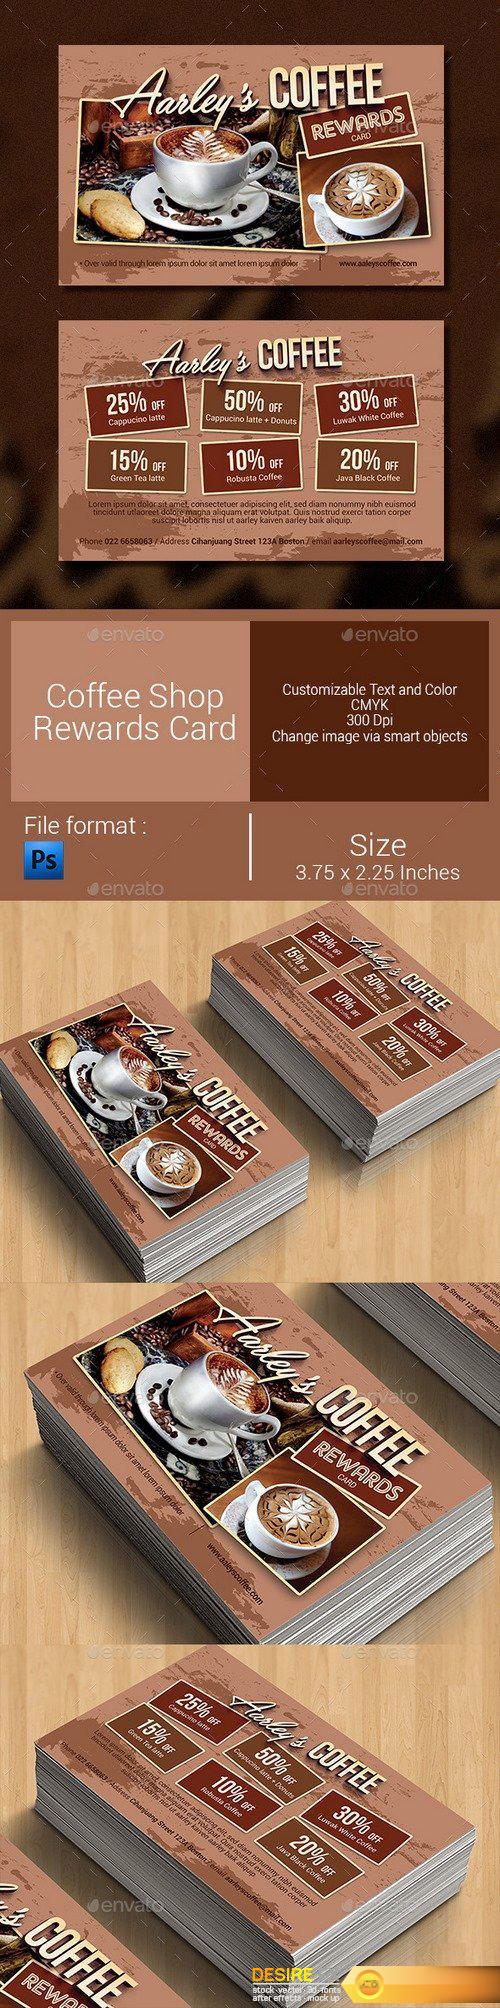 Graphicriver - Coffee Shop Rewards Card 9270673